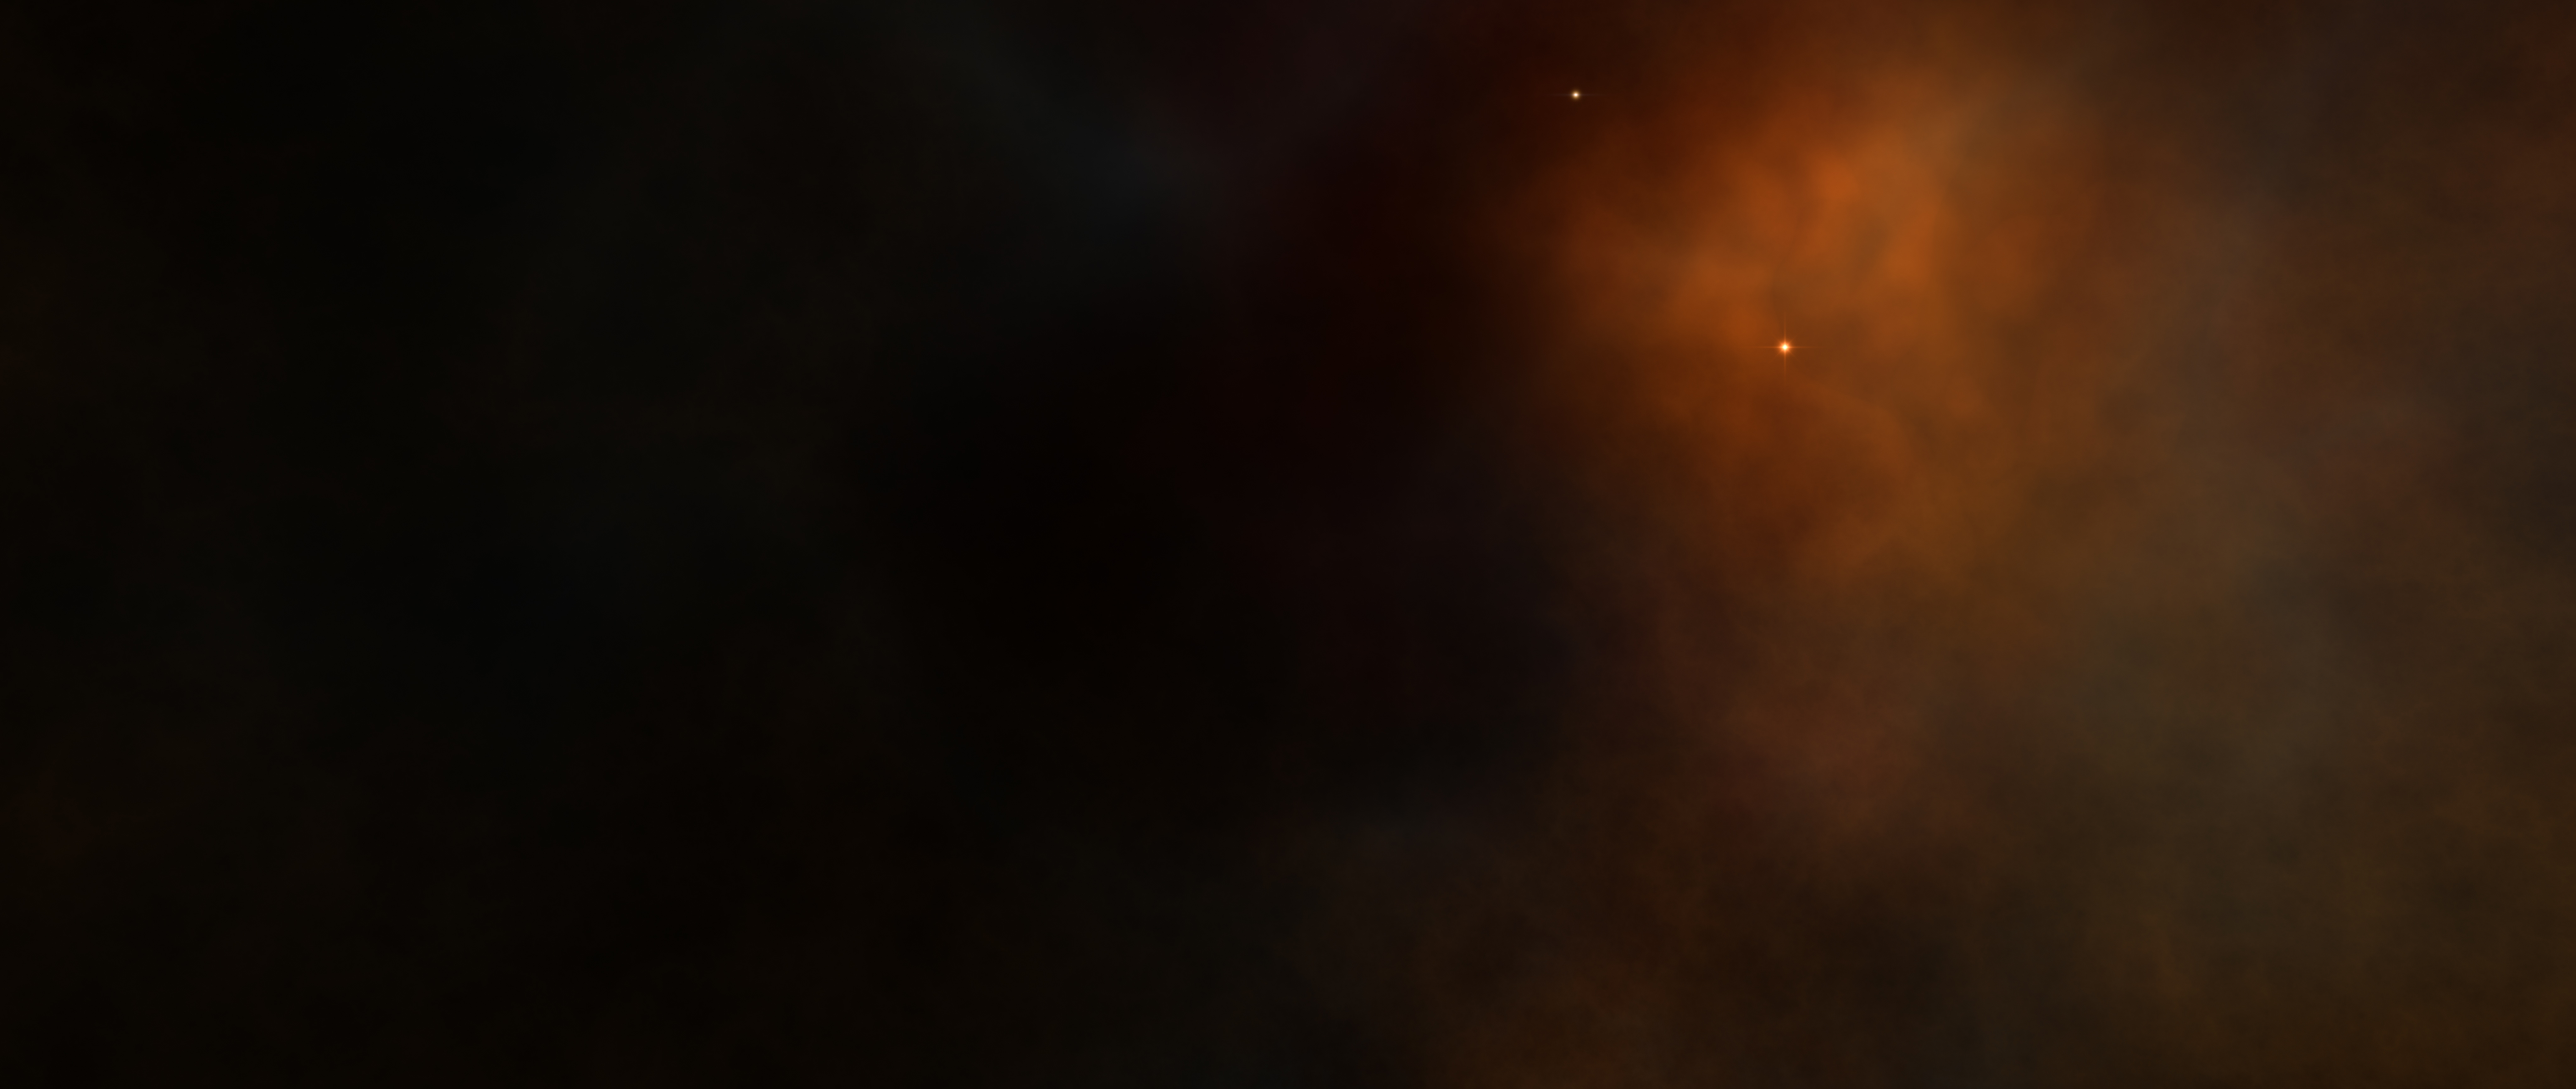 nebula 1574942809 - Nebula -